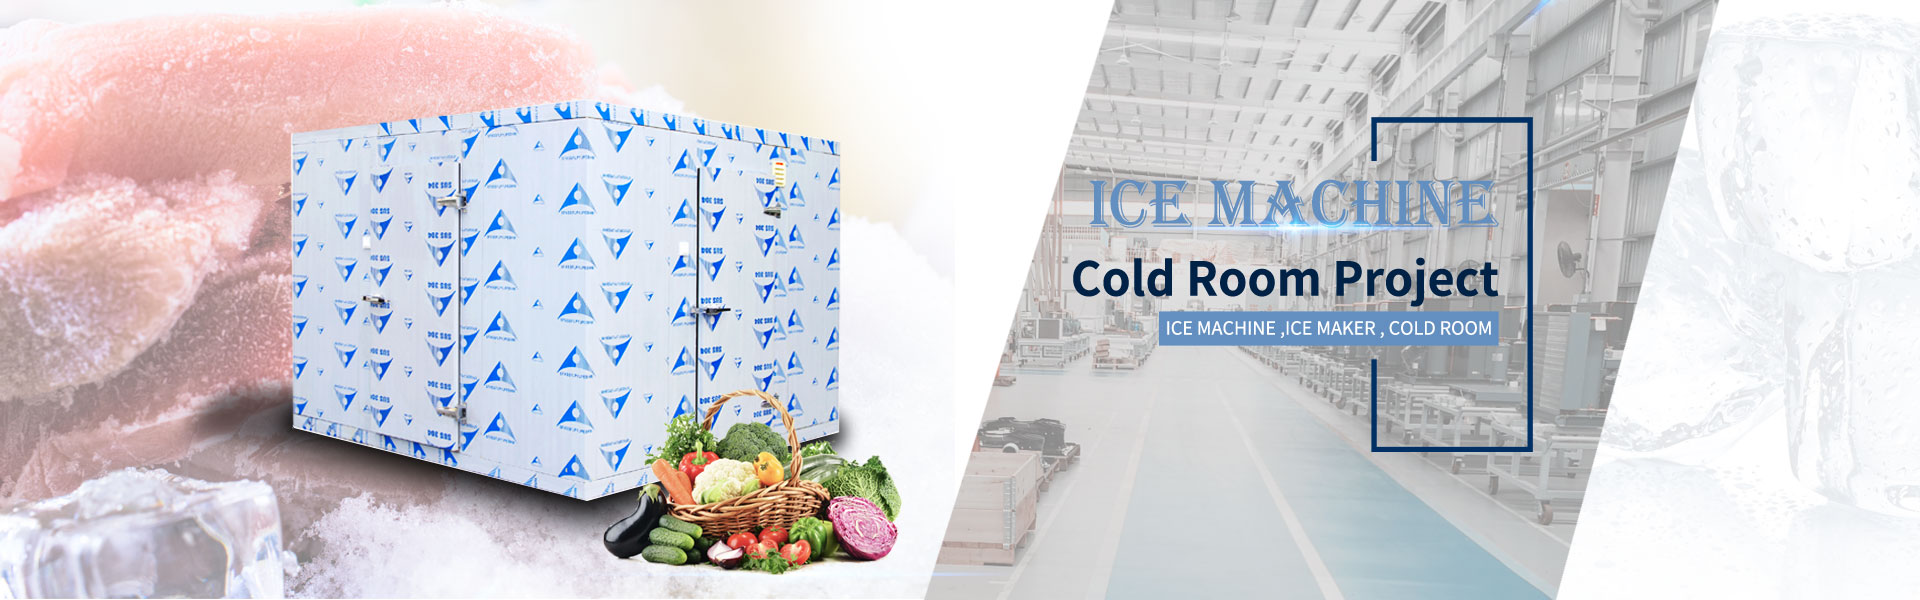 เครื่องทำน้ำแข็ง, เครื่องทำน้ำแข็ง, ห้องเย็น,Guangzhou Hefforts Refrigeration Equipment Co.,Ltd.